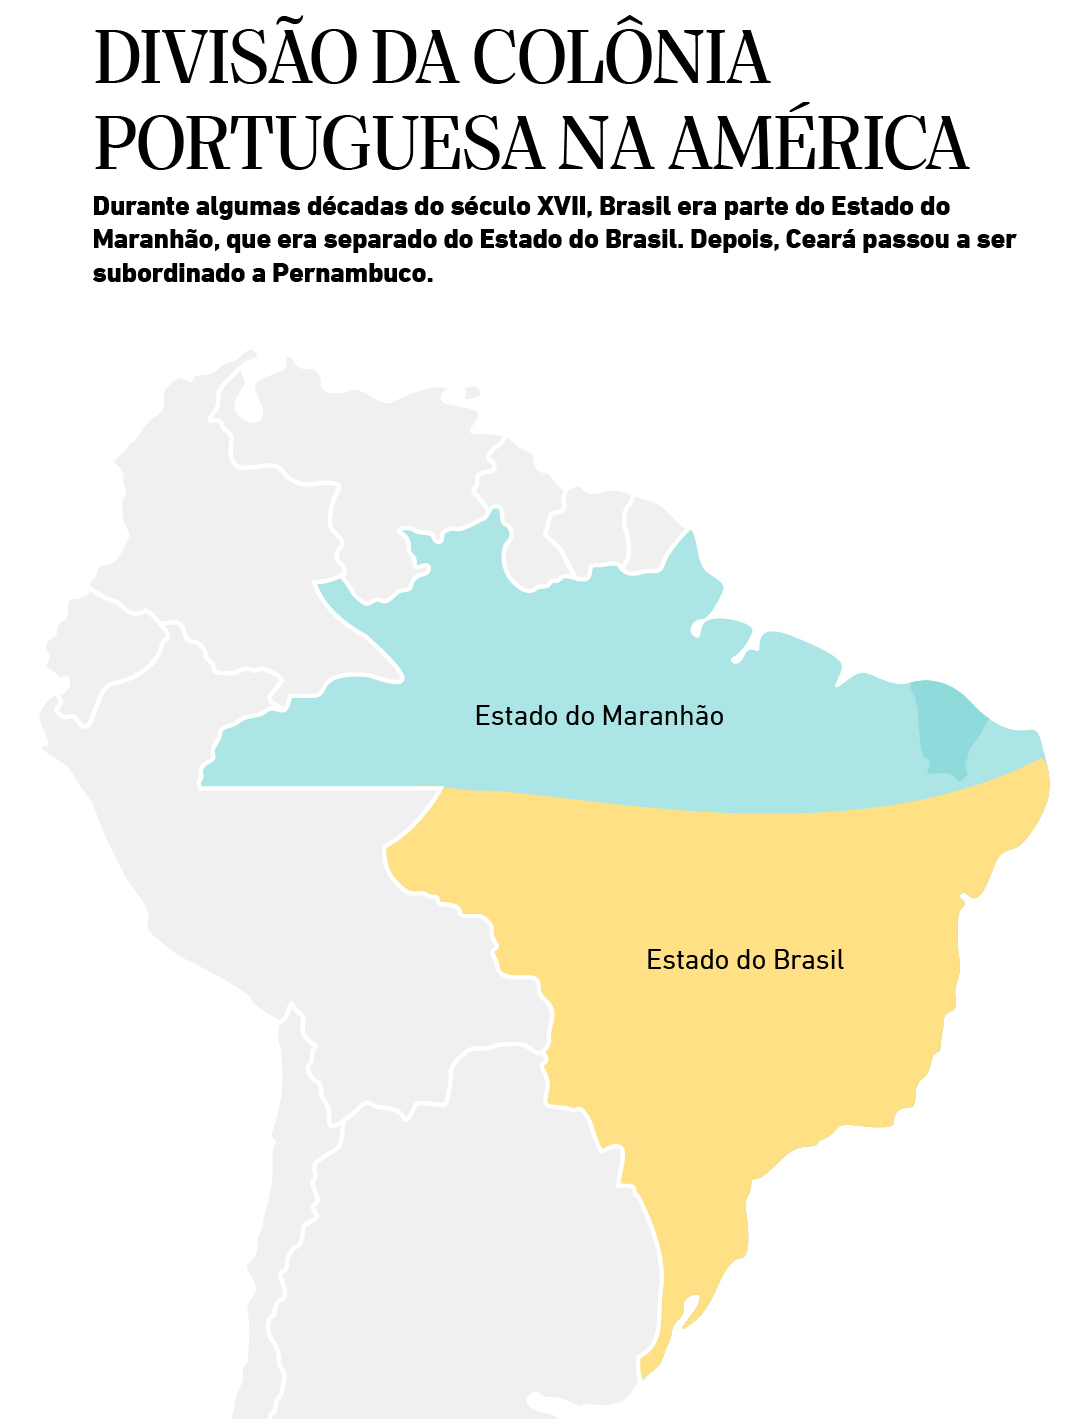 info mapa Divisão da colônia portuguesa na América(Foto: infográficos lfcorullon)